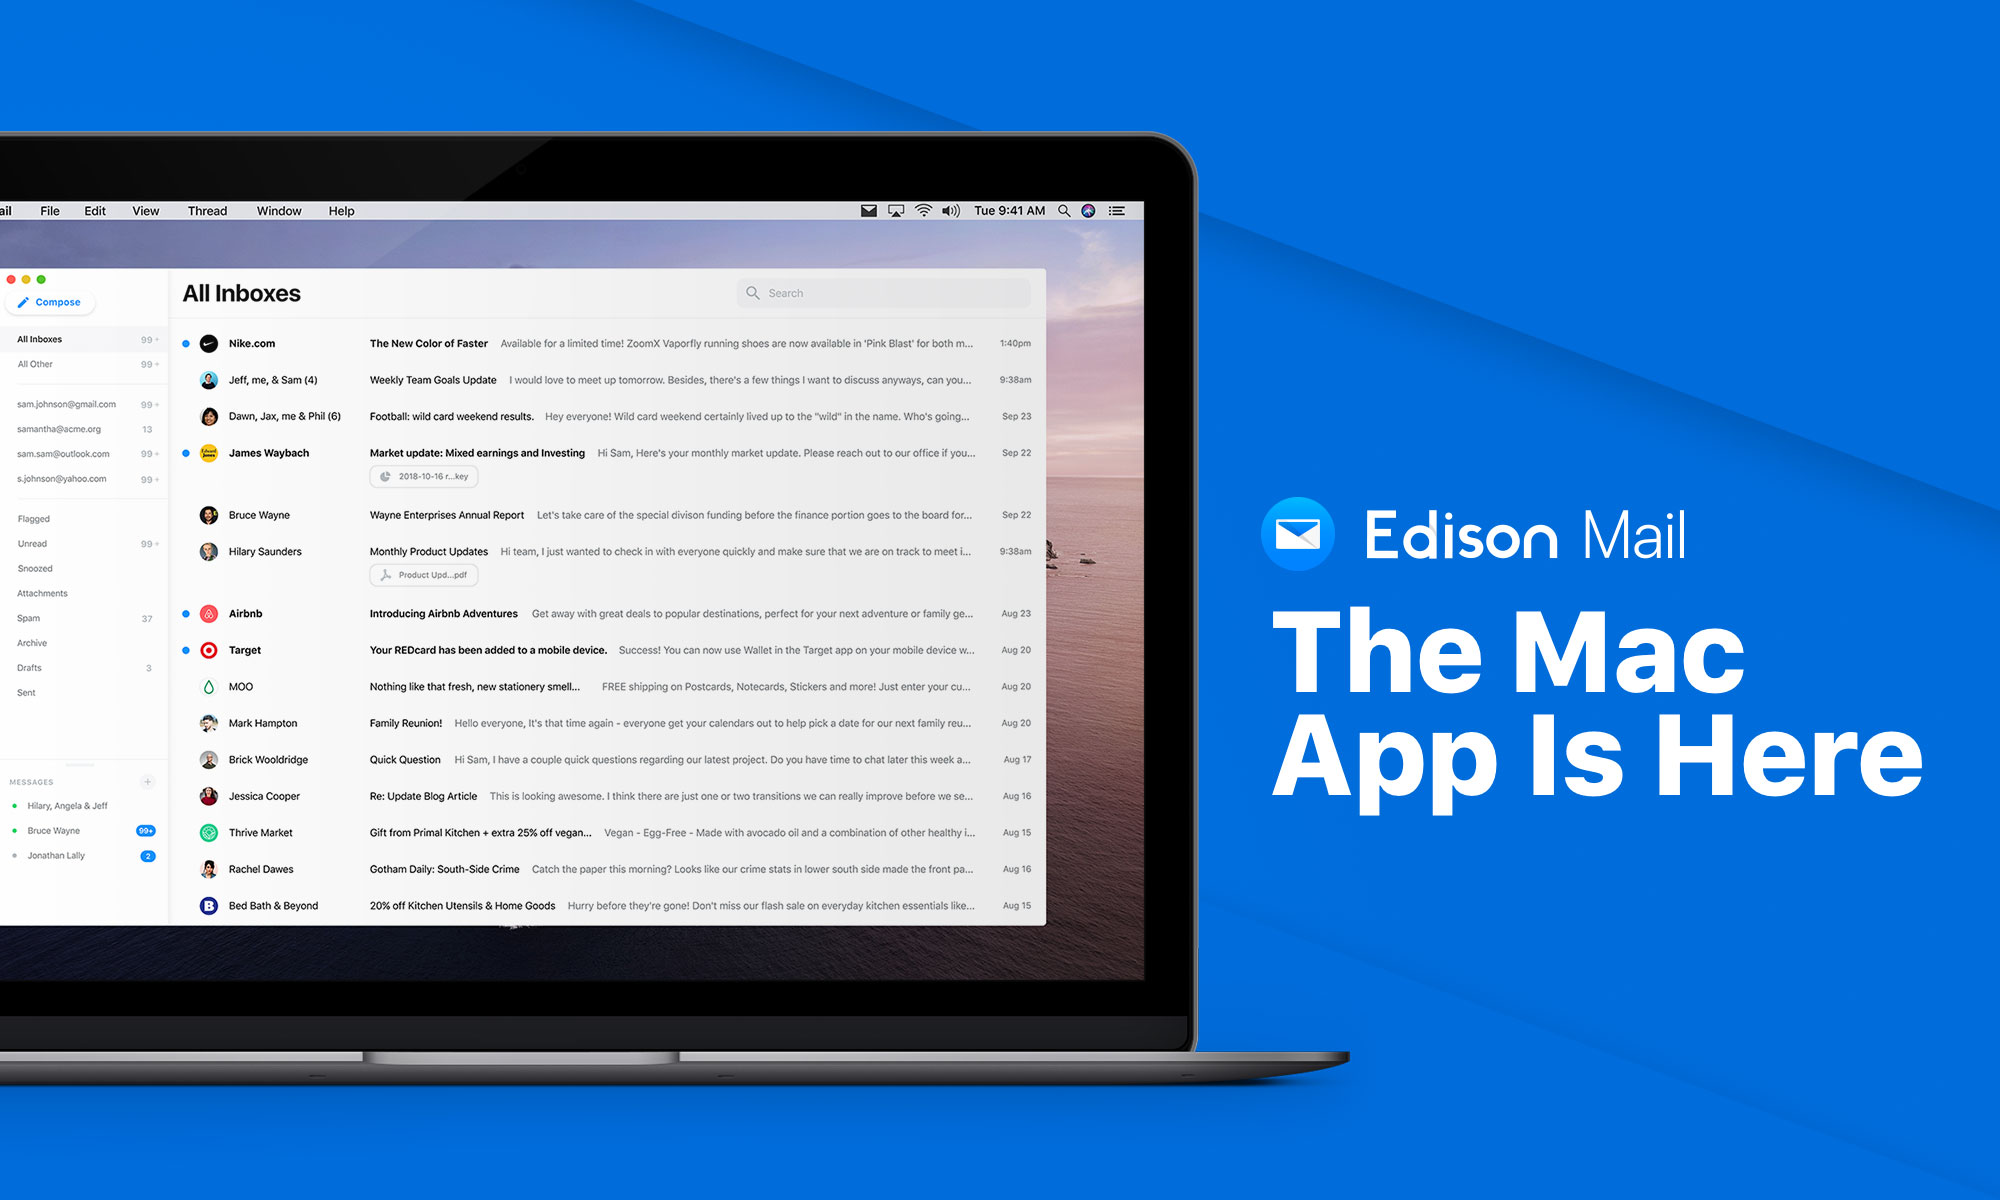 Edison Mailがmacに届き Iosアプリがスマートアシスタント機能を受け取る